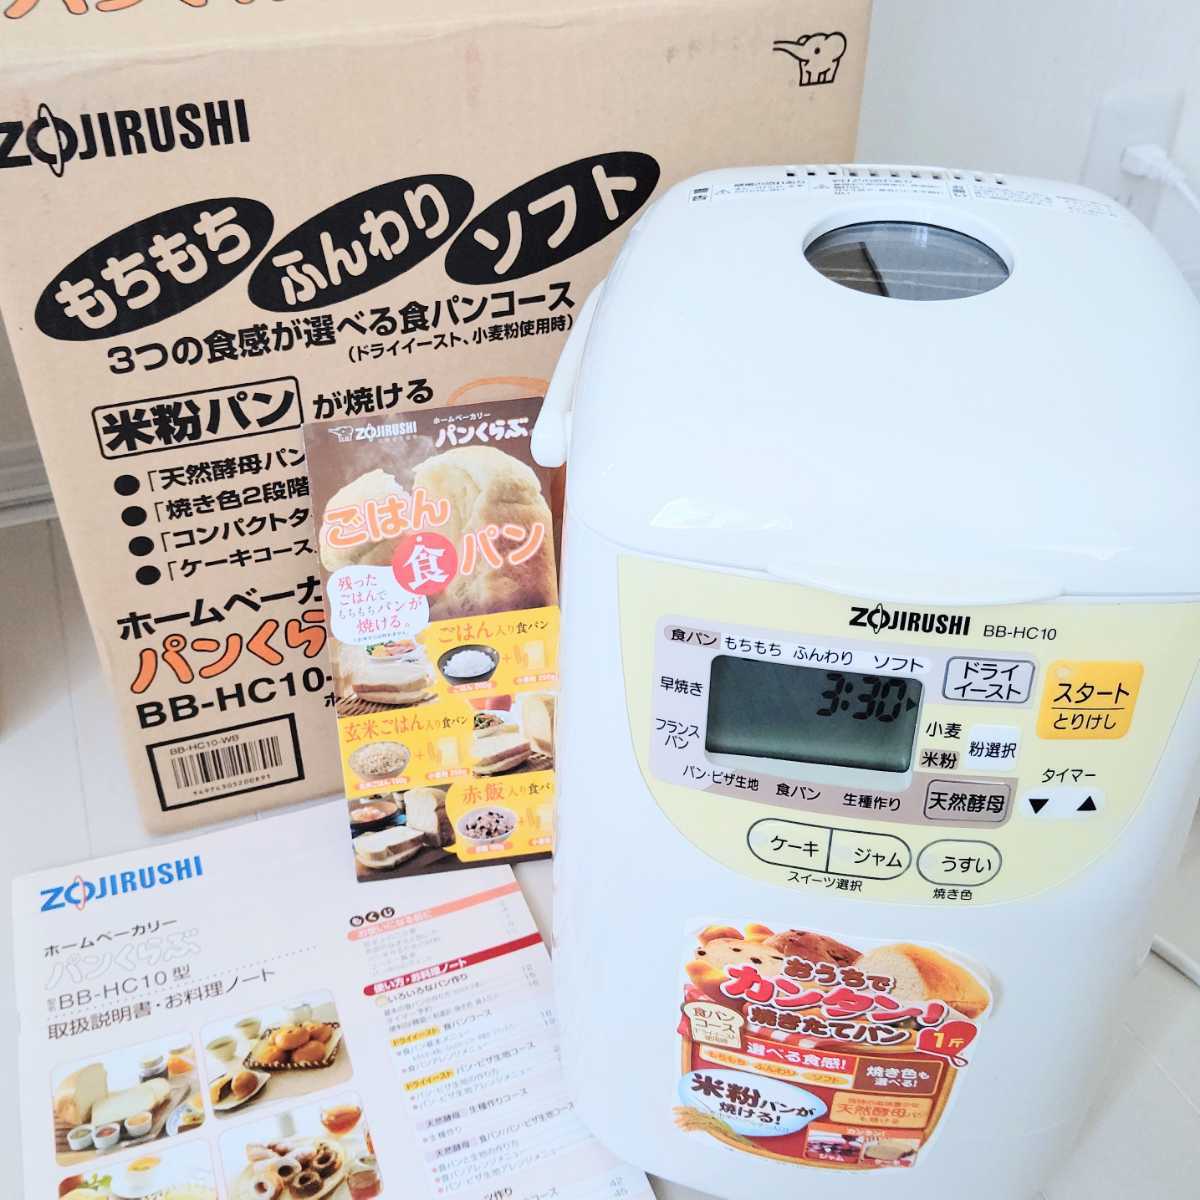 大人気 ZOJIRUSHI 米粉でパンが焼ける ホームベーカリー BB-HC10 ad